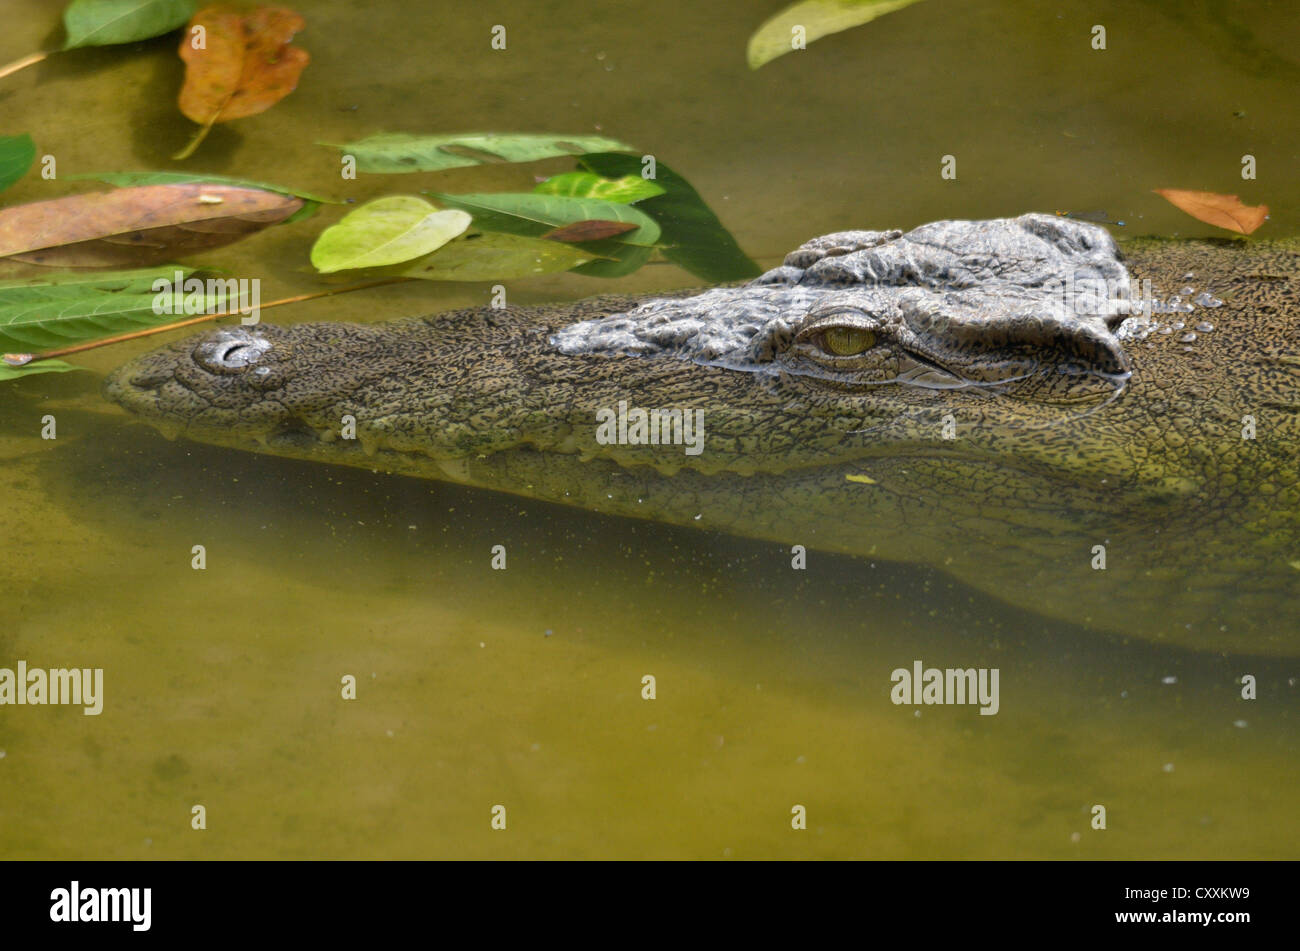 Nile crocodile or common crocodile (Crocodylus niloticus), Limbé Wildlife Centre, Limbé, Carmoon, Central Africa, Africa Stock Photo